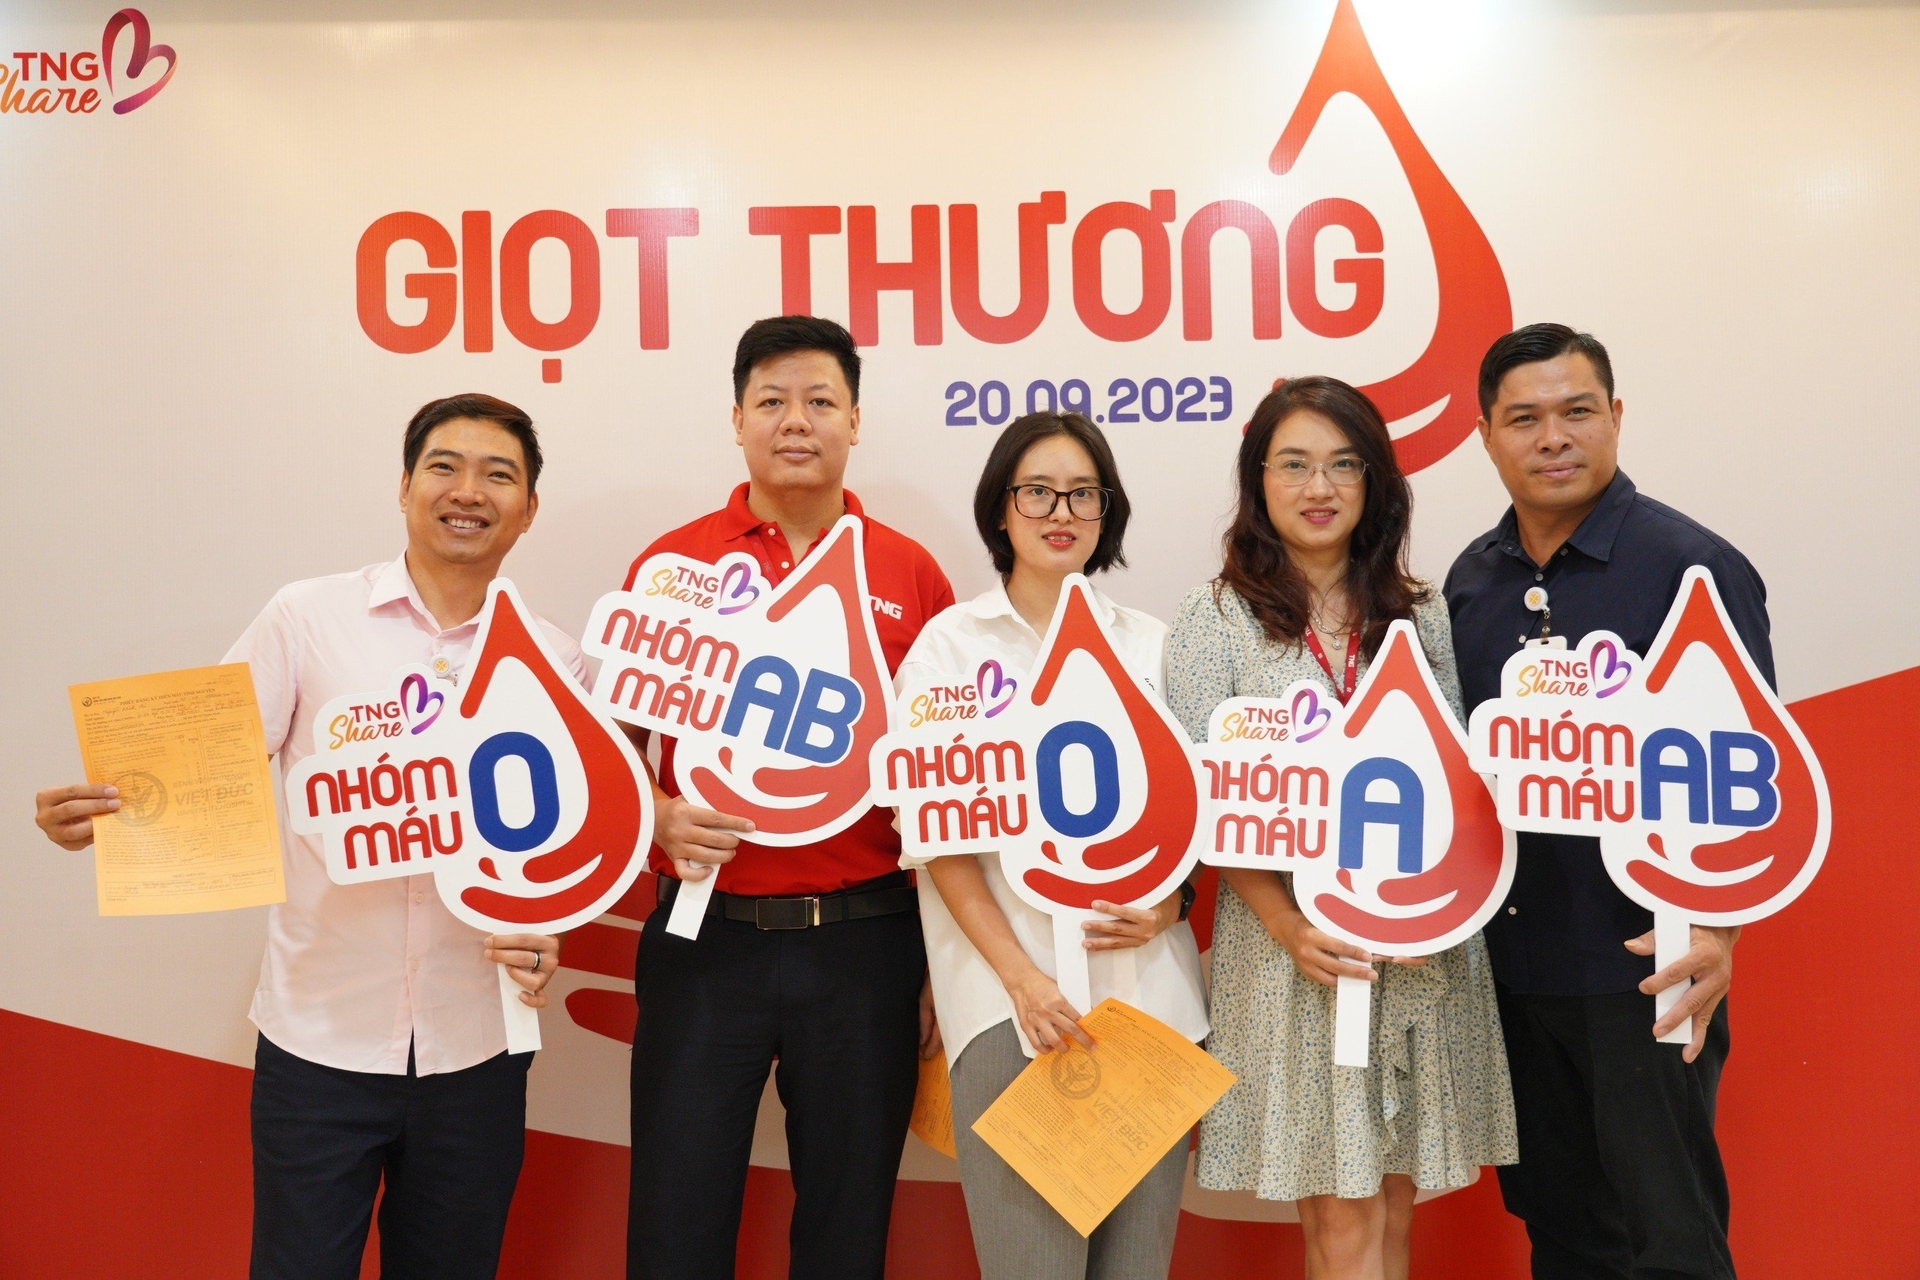 Chương trình do TNG Holdings Vietnam phối hợp với Bệnh viện Việt Đức tổ chức đã nhận được sự hưởng ứng nồng nhiệt từ đội ngũ lãnh đạo Tập đoàn. Ảnh: TNG Holdings Vietnam.